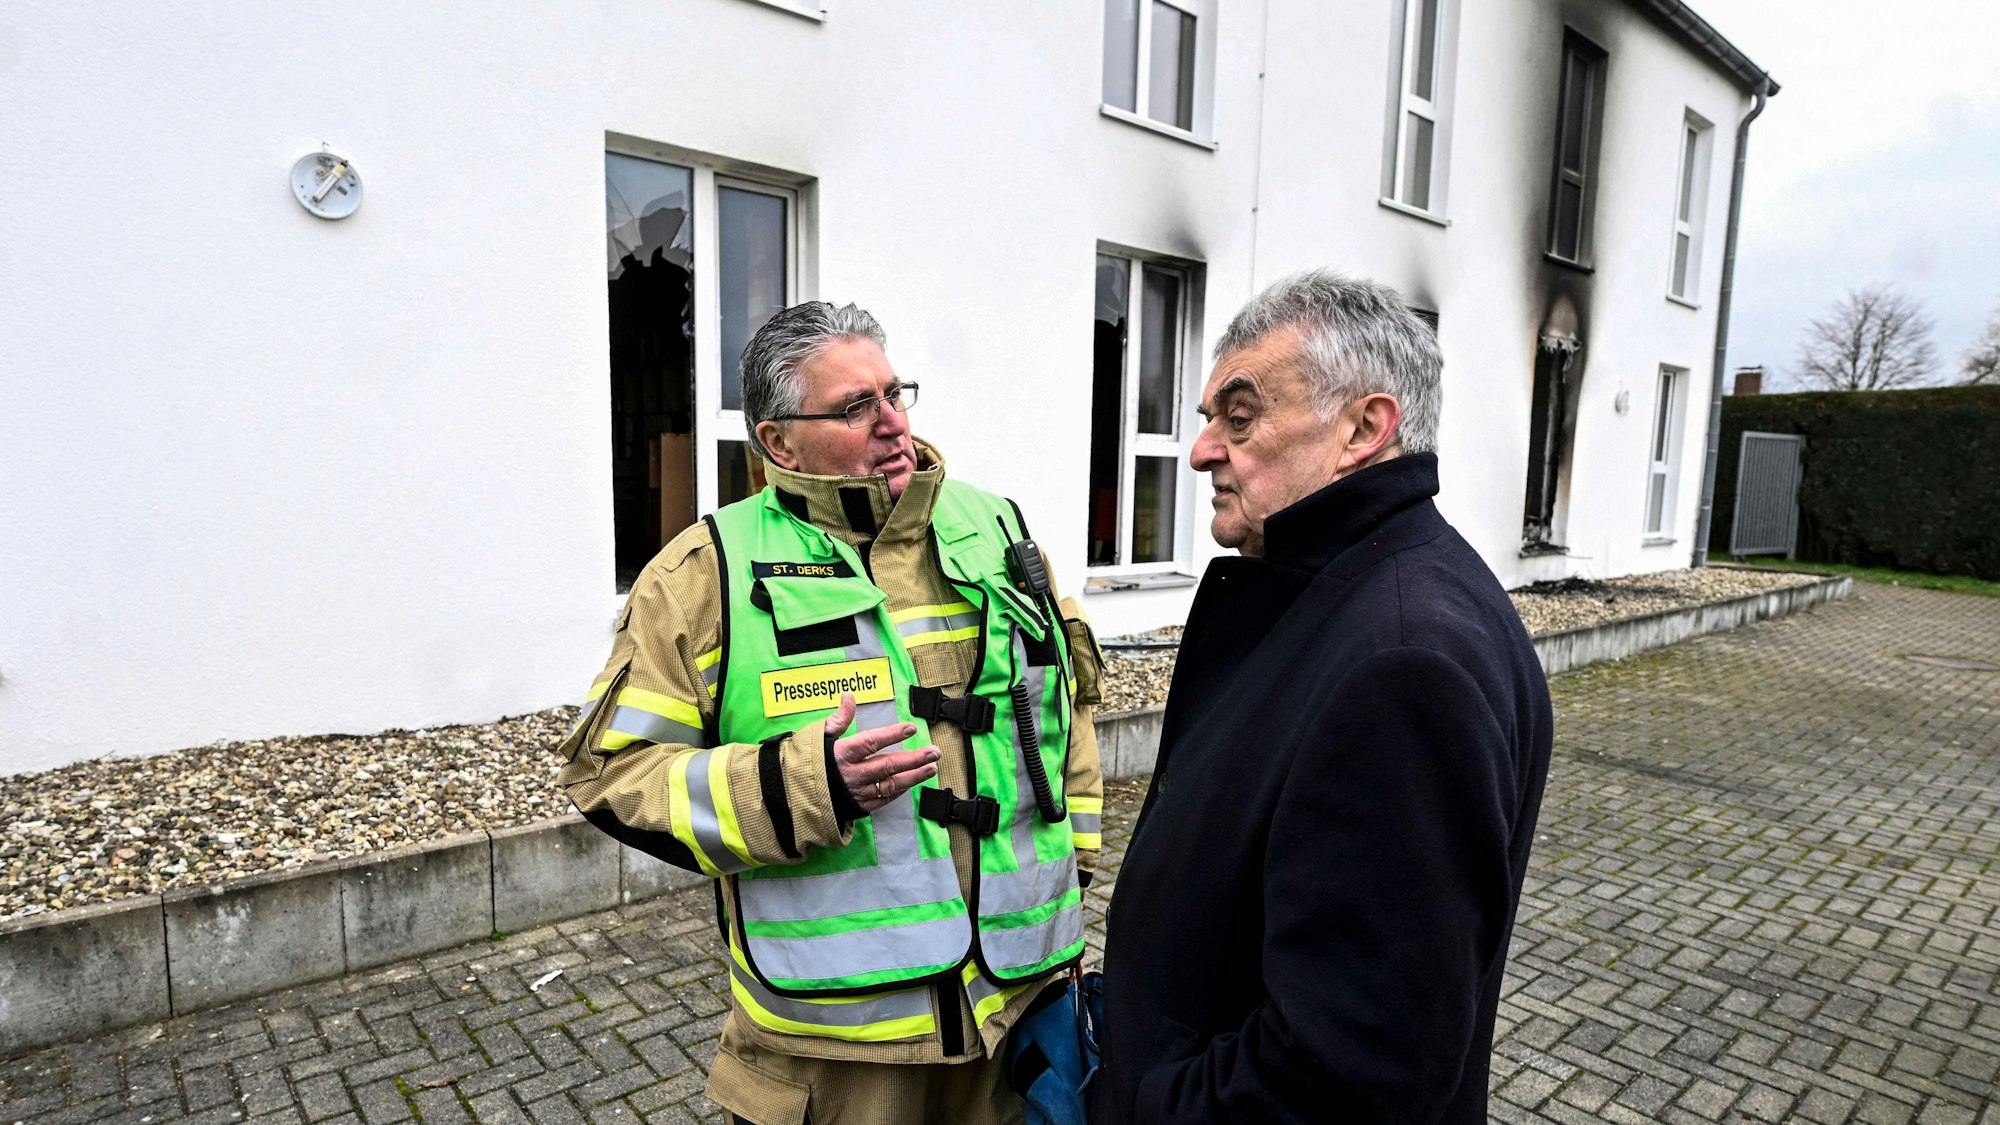 NRW-Innenminister Herbert Reul (CDU) im Gespräch mit einem Feuerwehr-Sprecher an der Seniorenunterkunft.